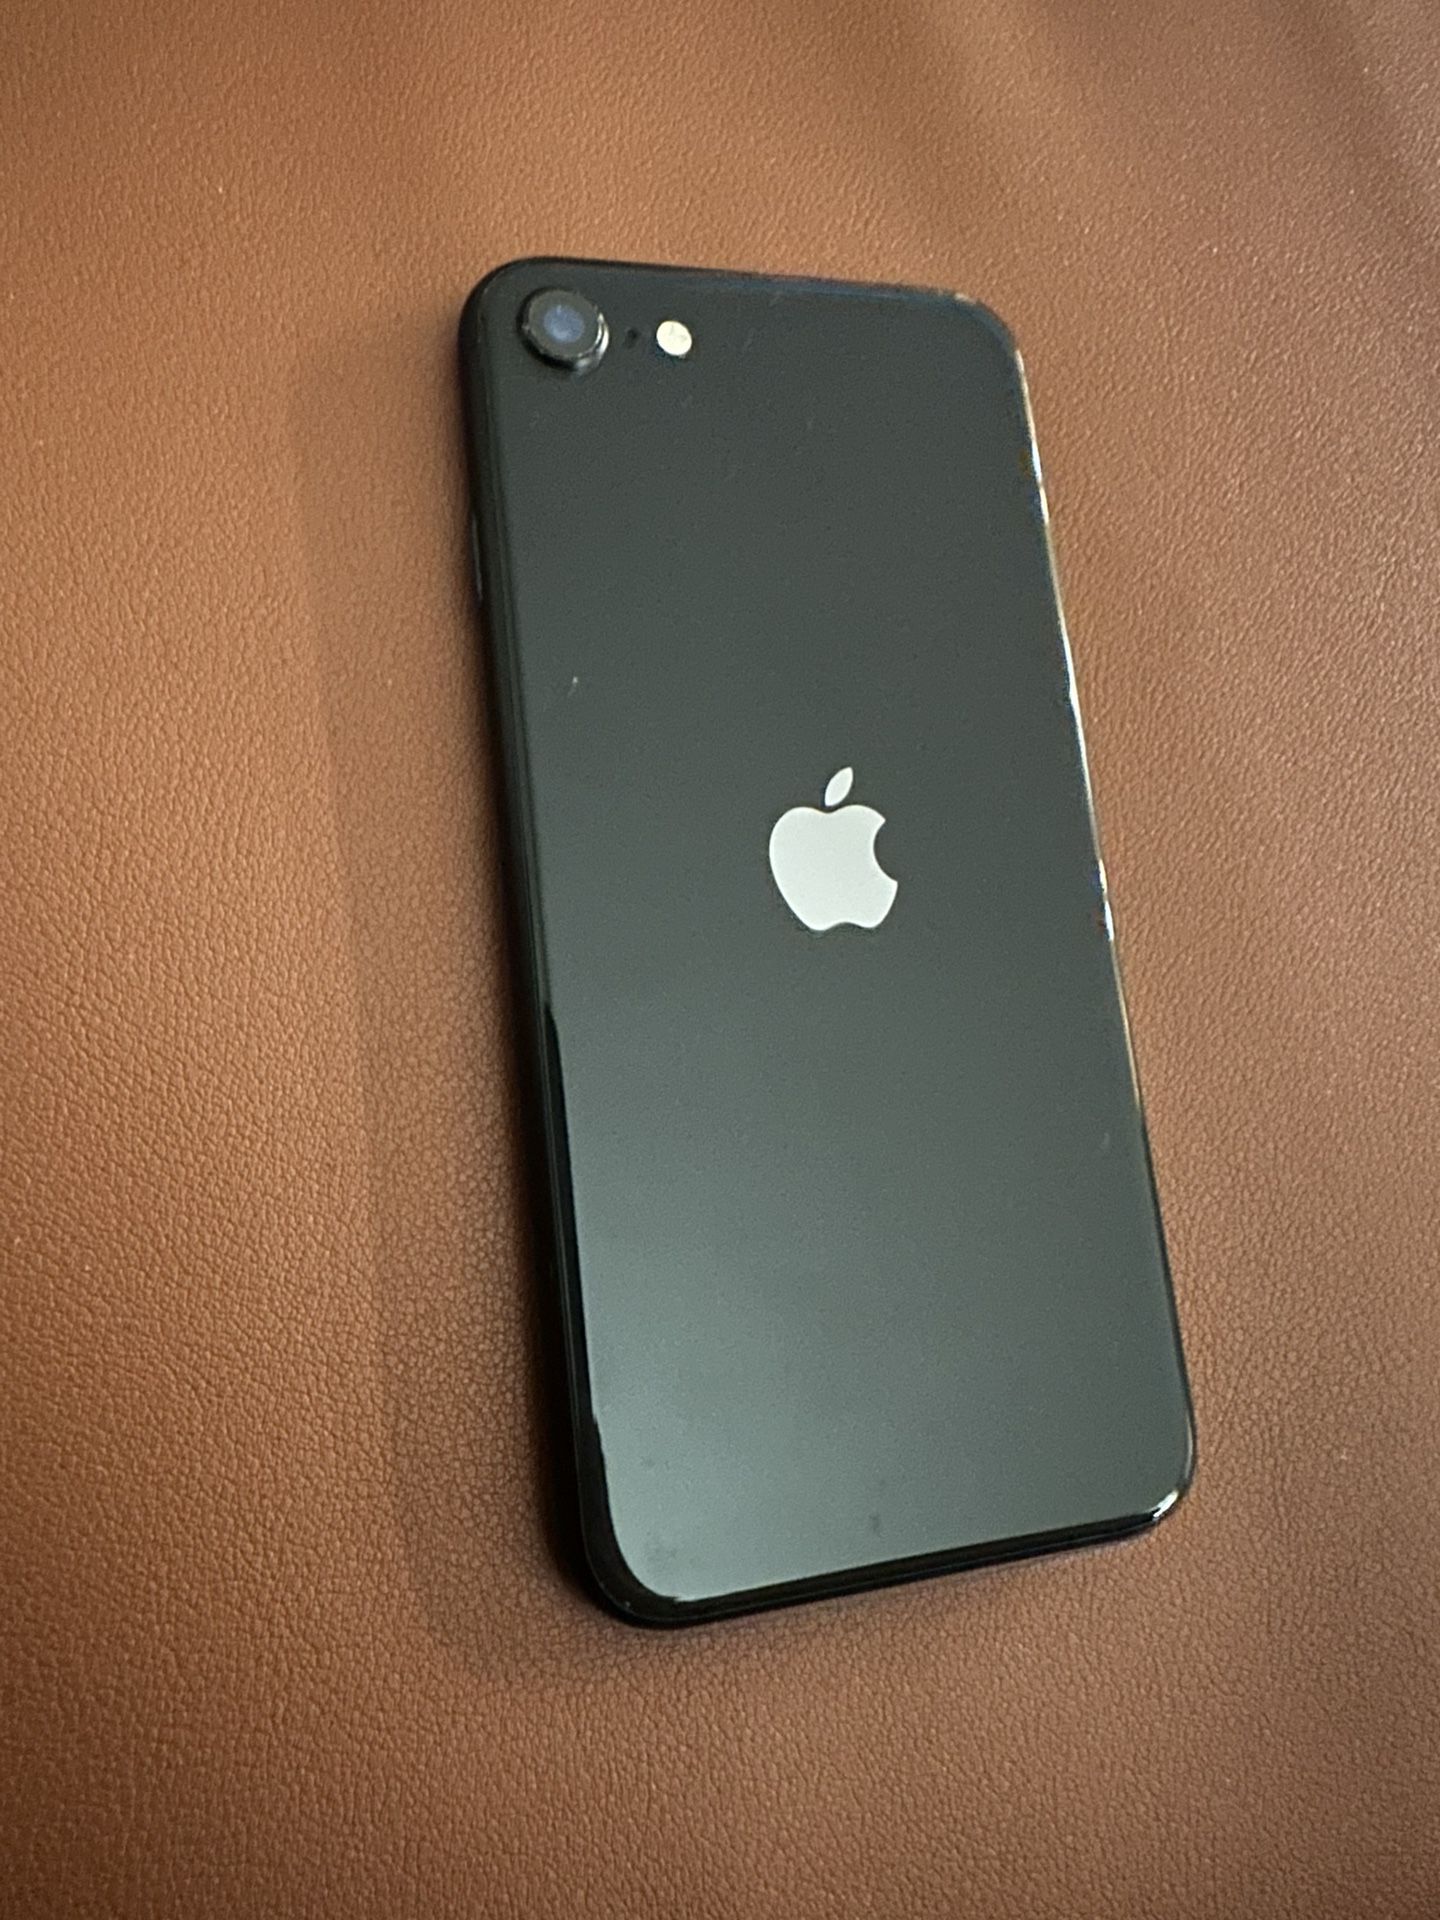 Apple iPhone SE 2 64gb Unlocked 